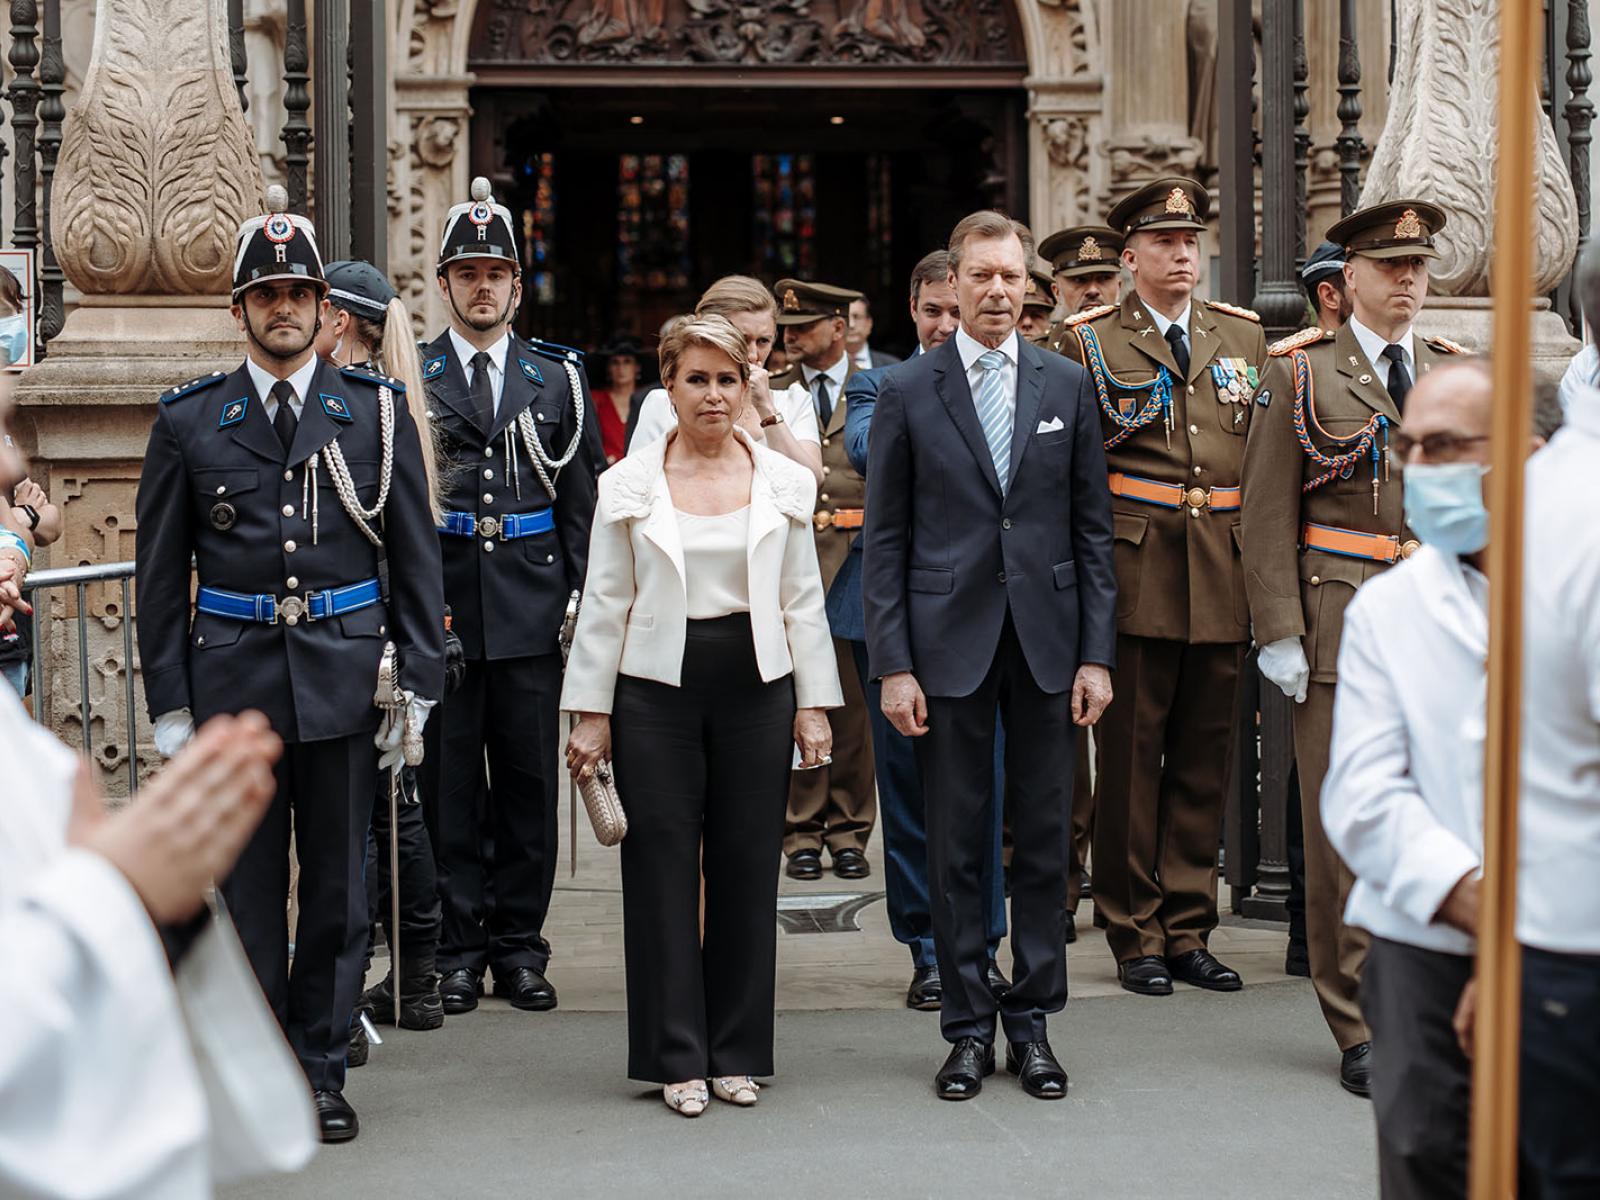 Le Couple grand-ducal devant la Cathédrale avant la procession